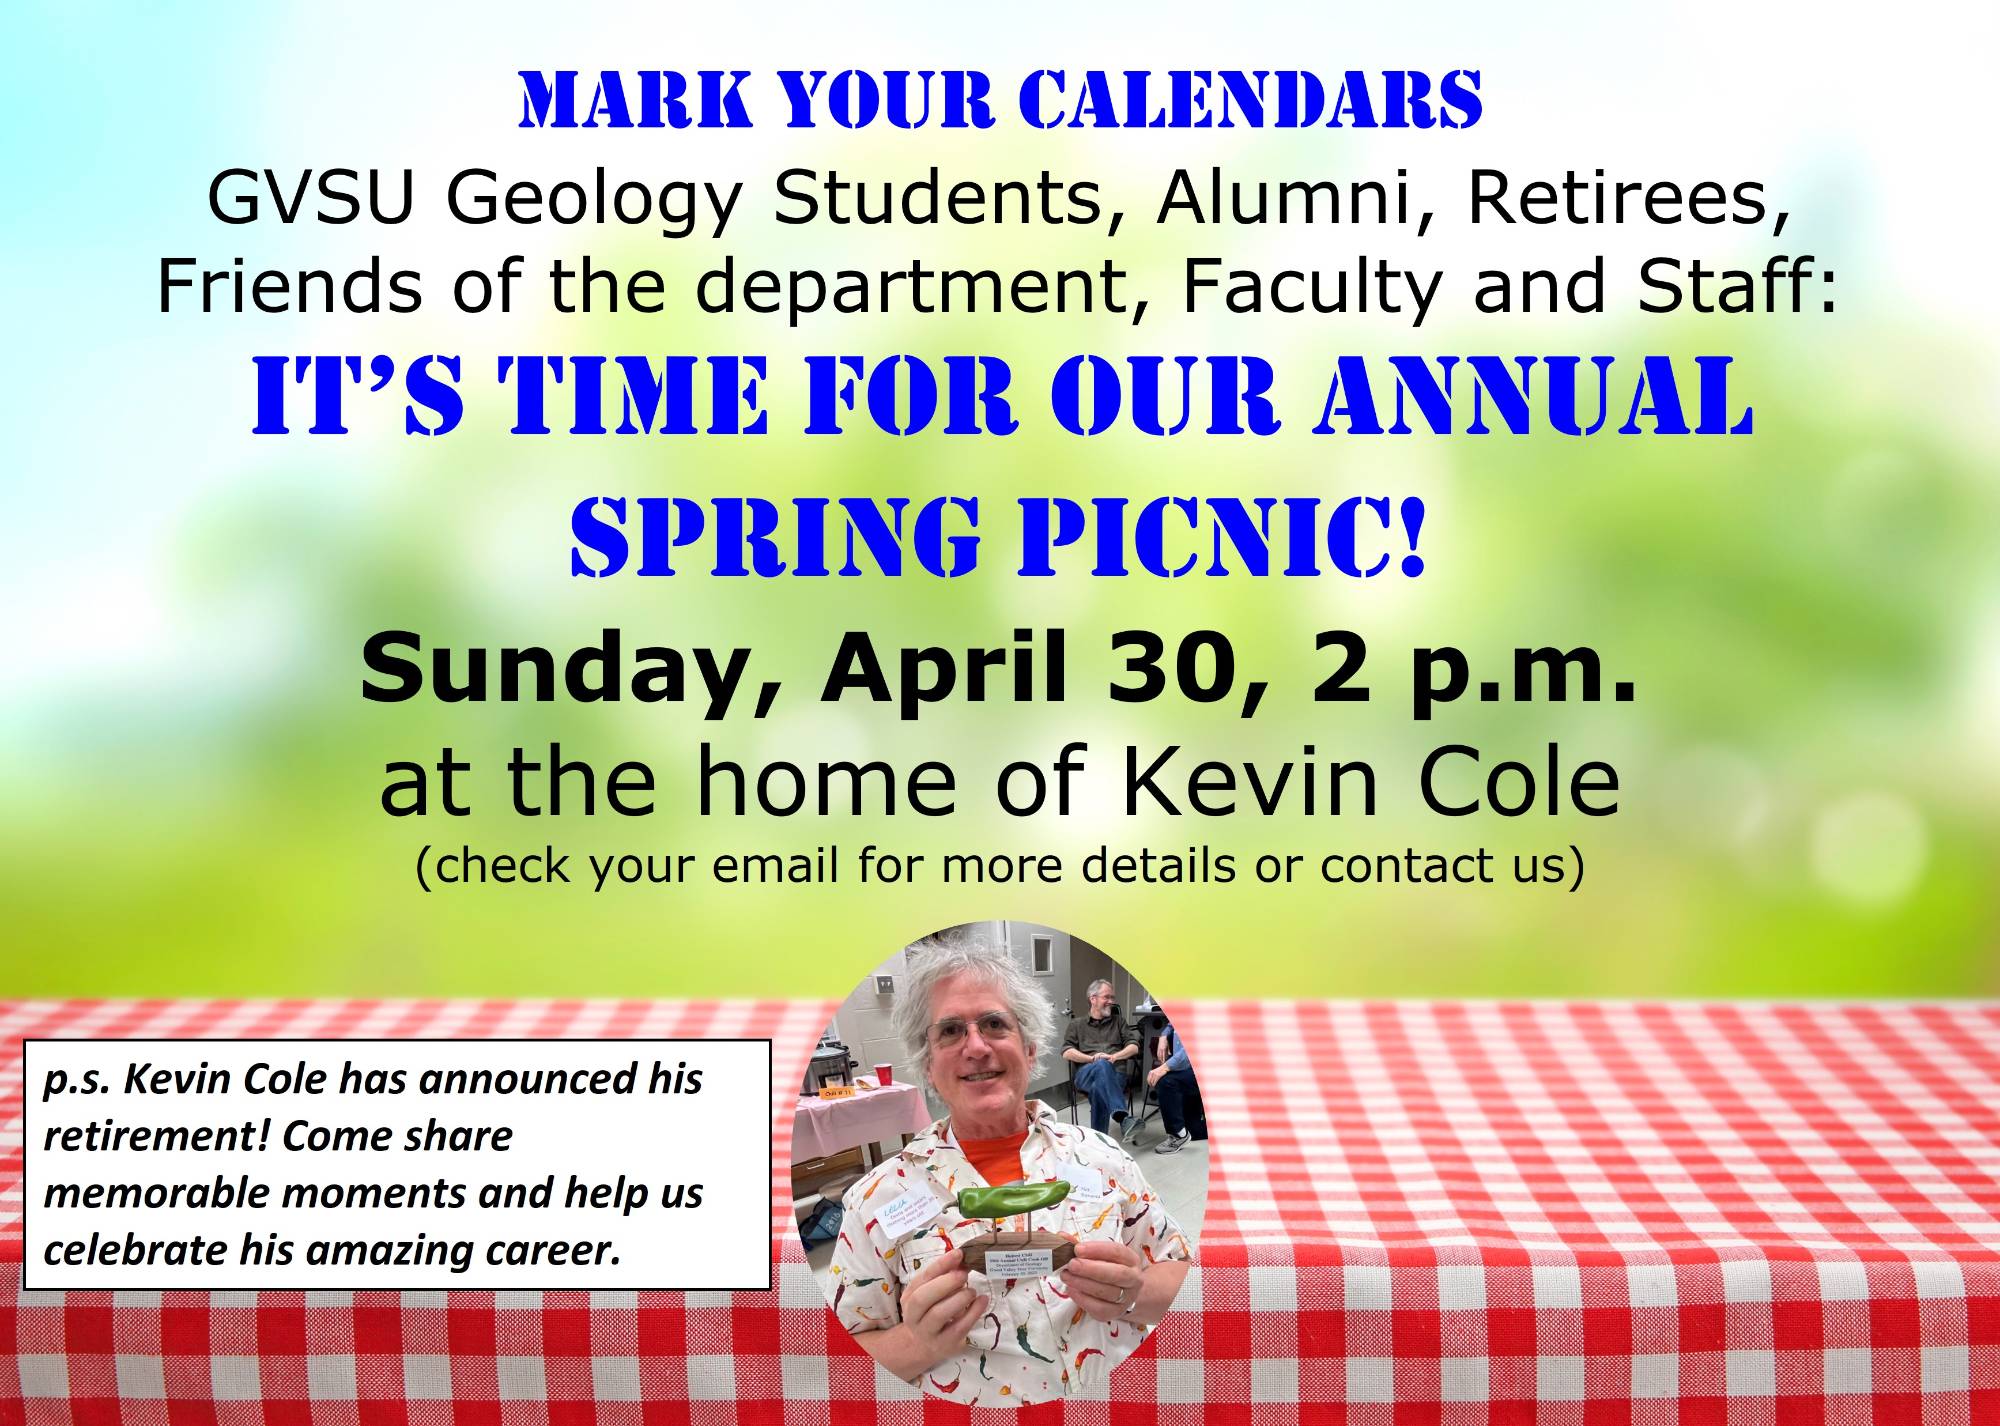 Invitation for picnic